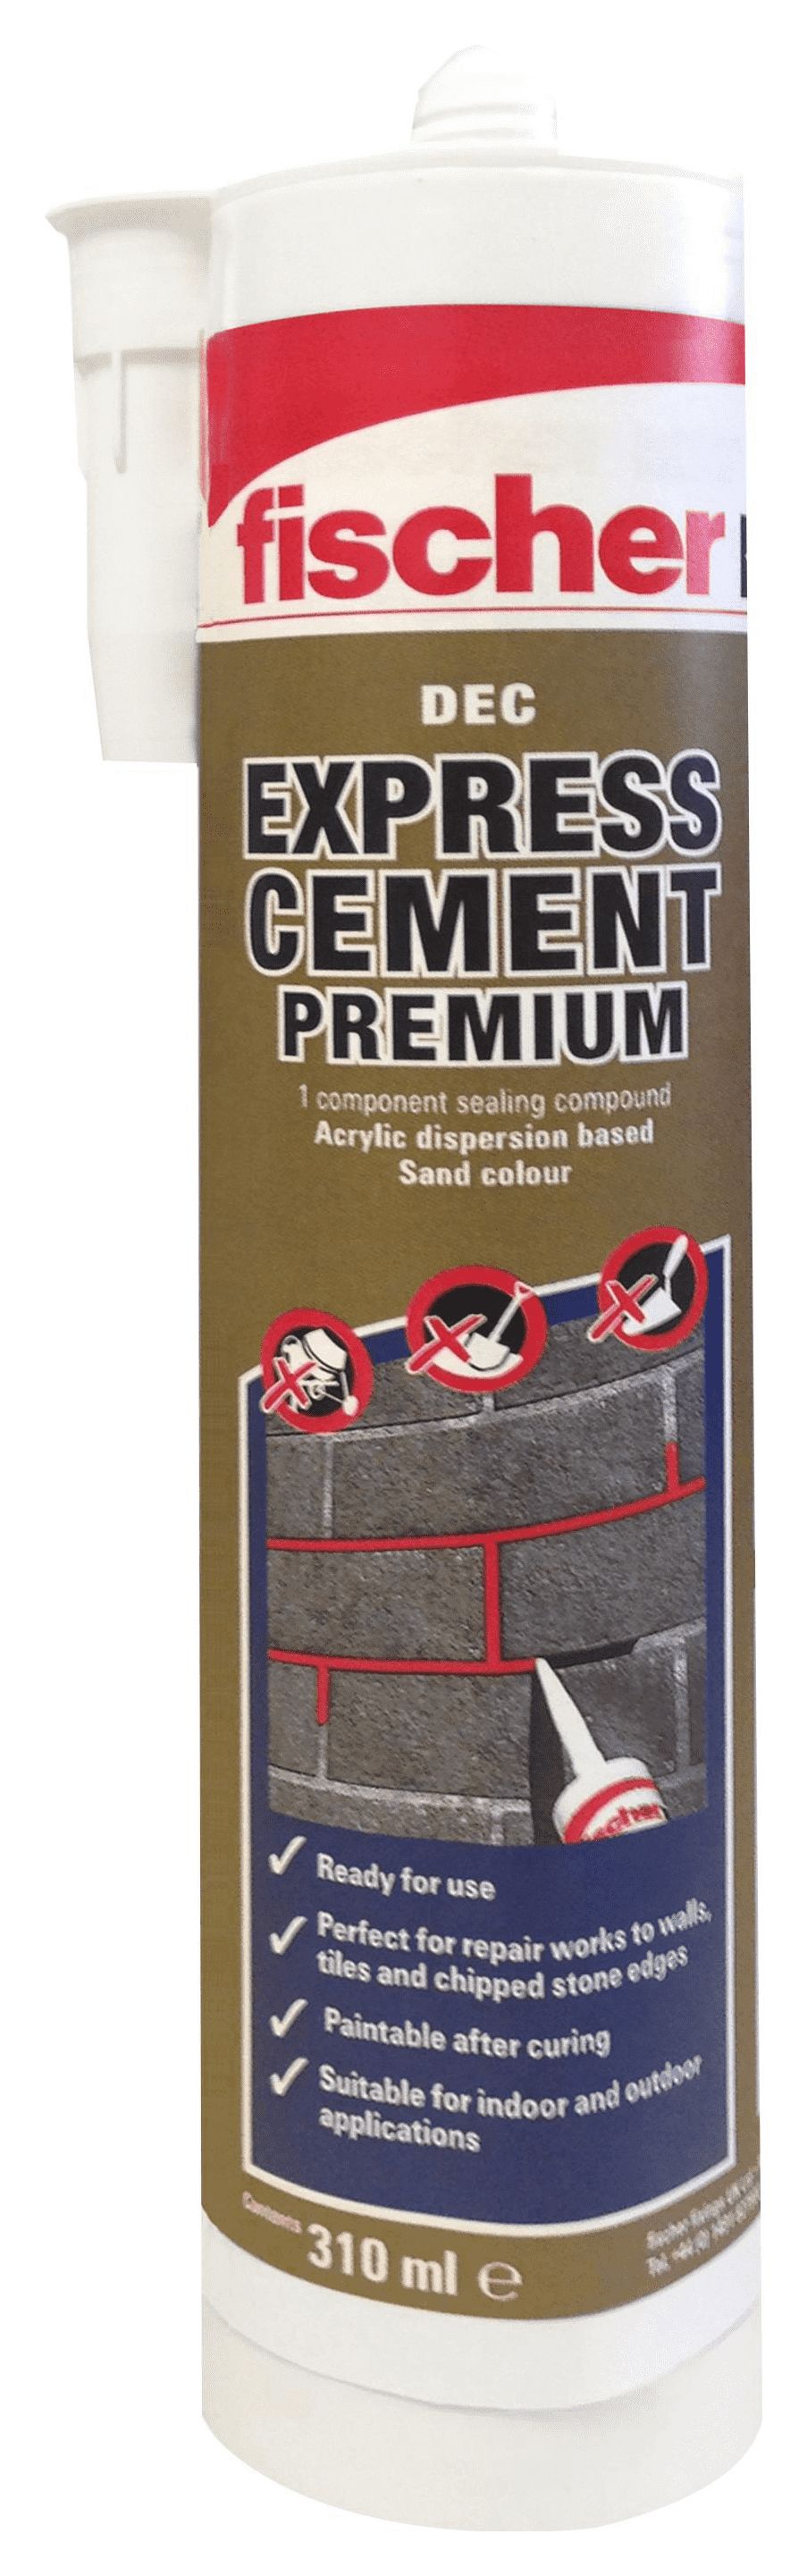 Image of Fischer DEC Premium Express Cement - Sand 310ml